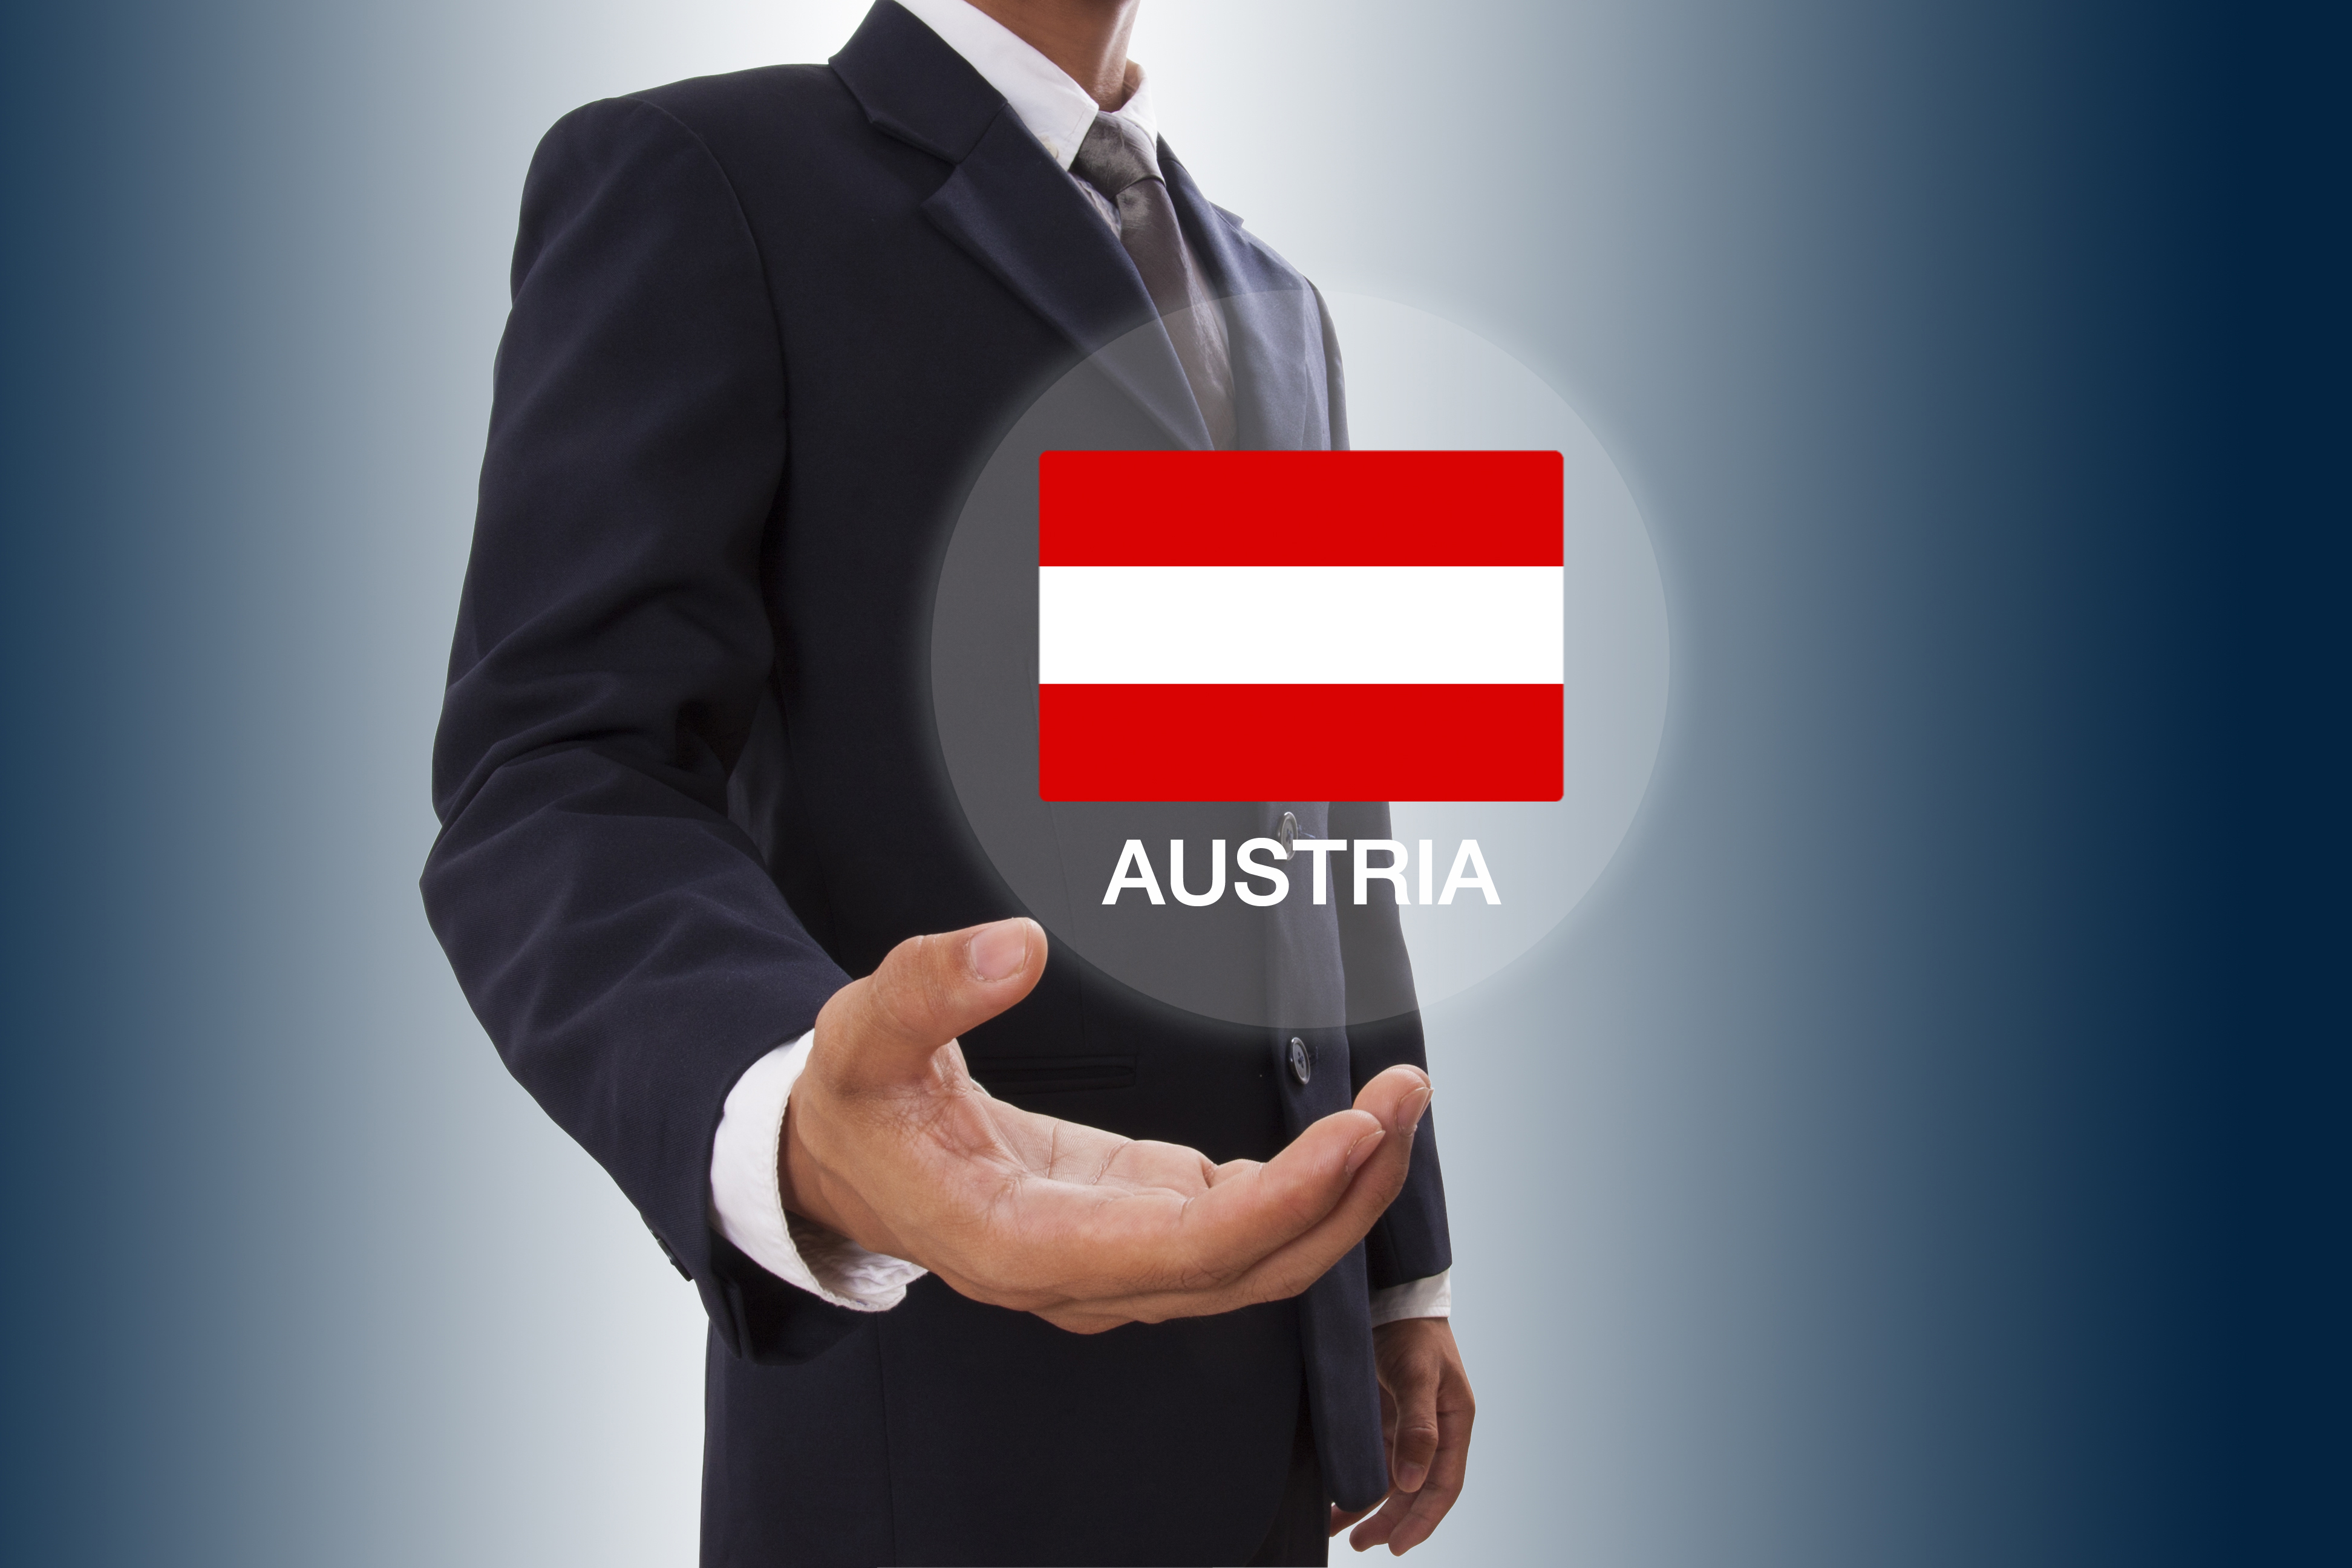 Мужчина держит карточку с флагом Австрии, работа в которой доступна для русских, украинцев и белорусов